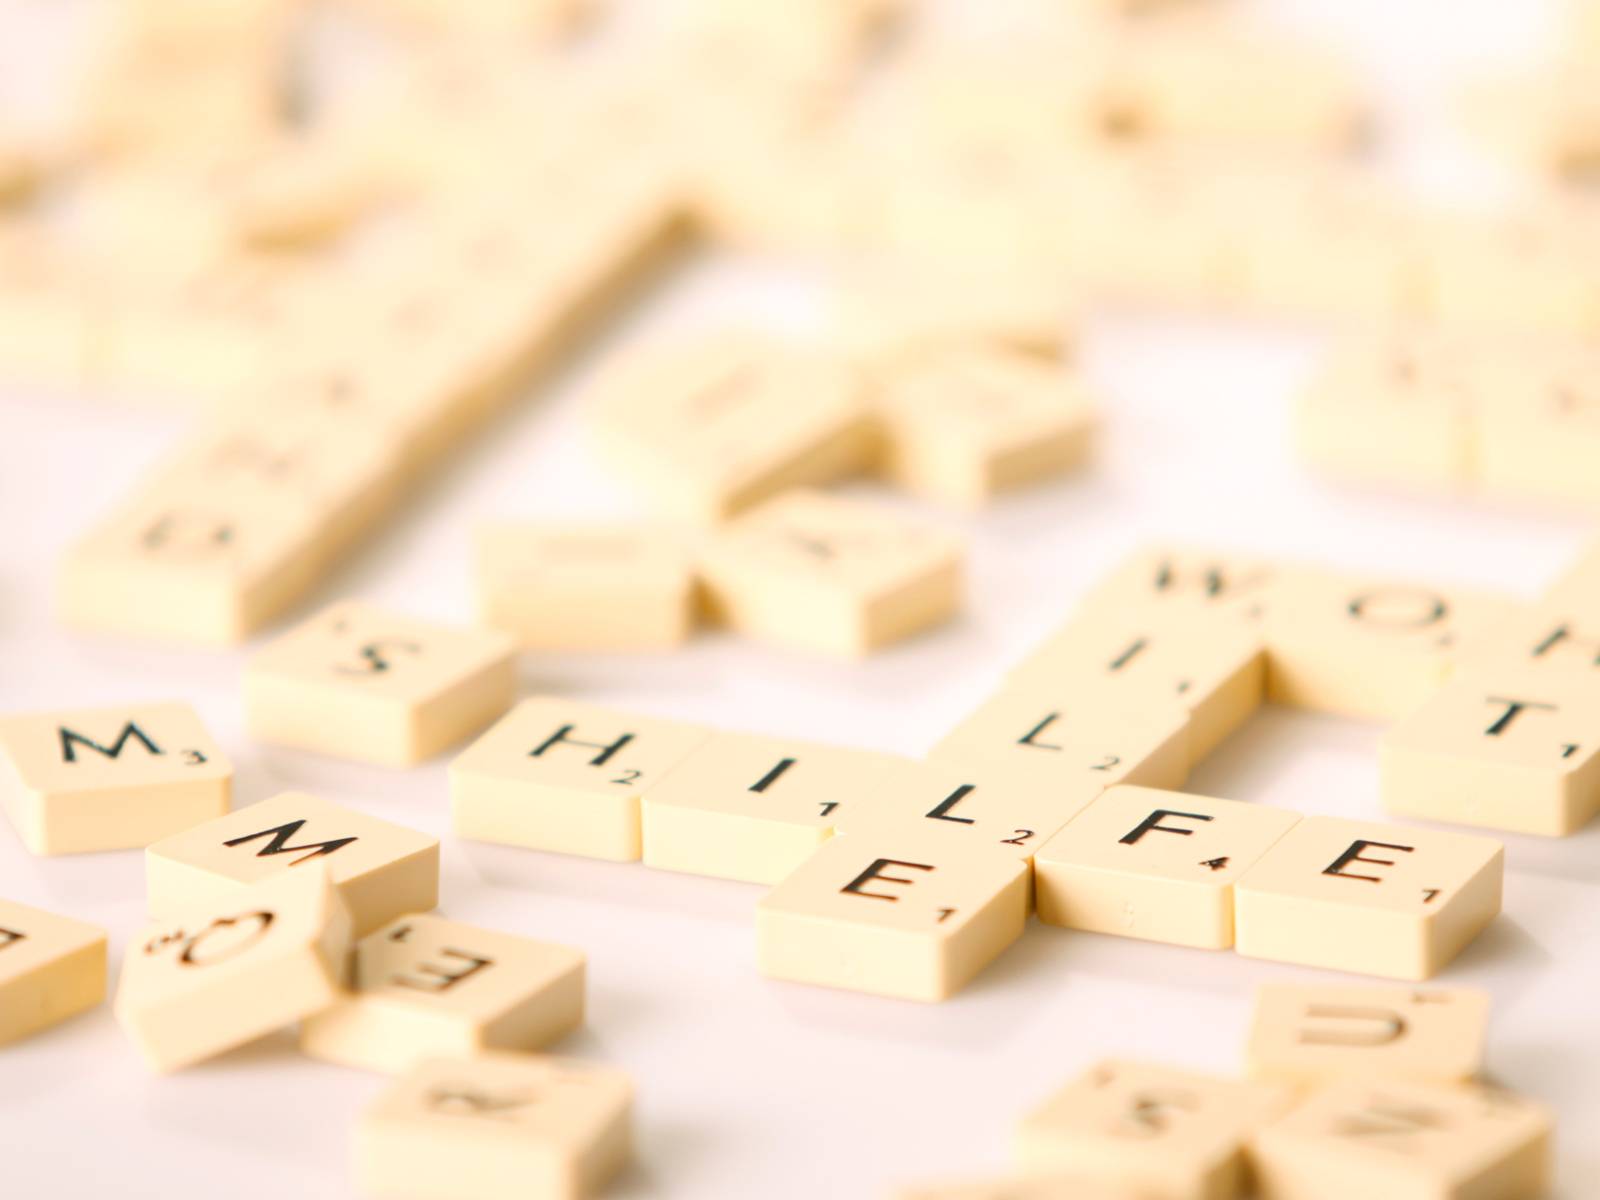 Spielsteine tragen einzelne Buchstaben. Einige liegen durcheinander, andere bilden zum Beispiel Worte "Hilfe" und "Wille".